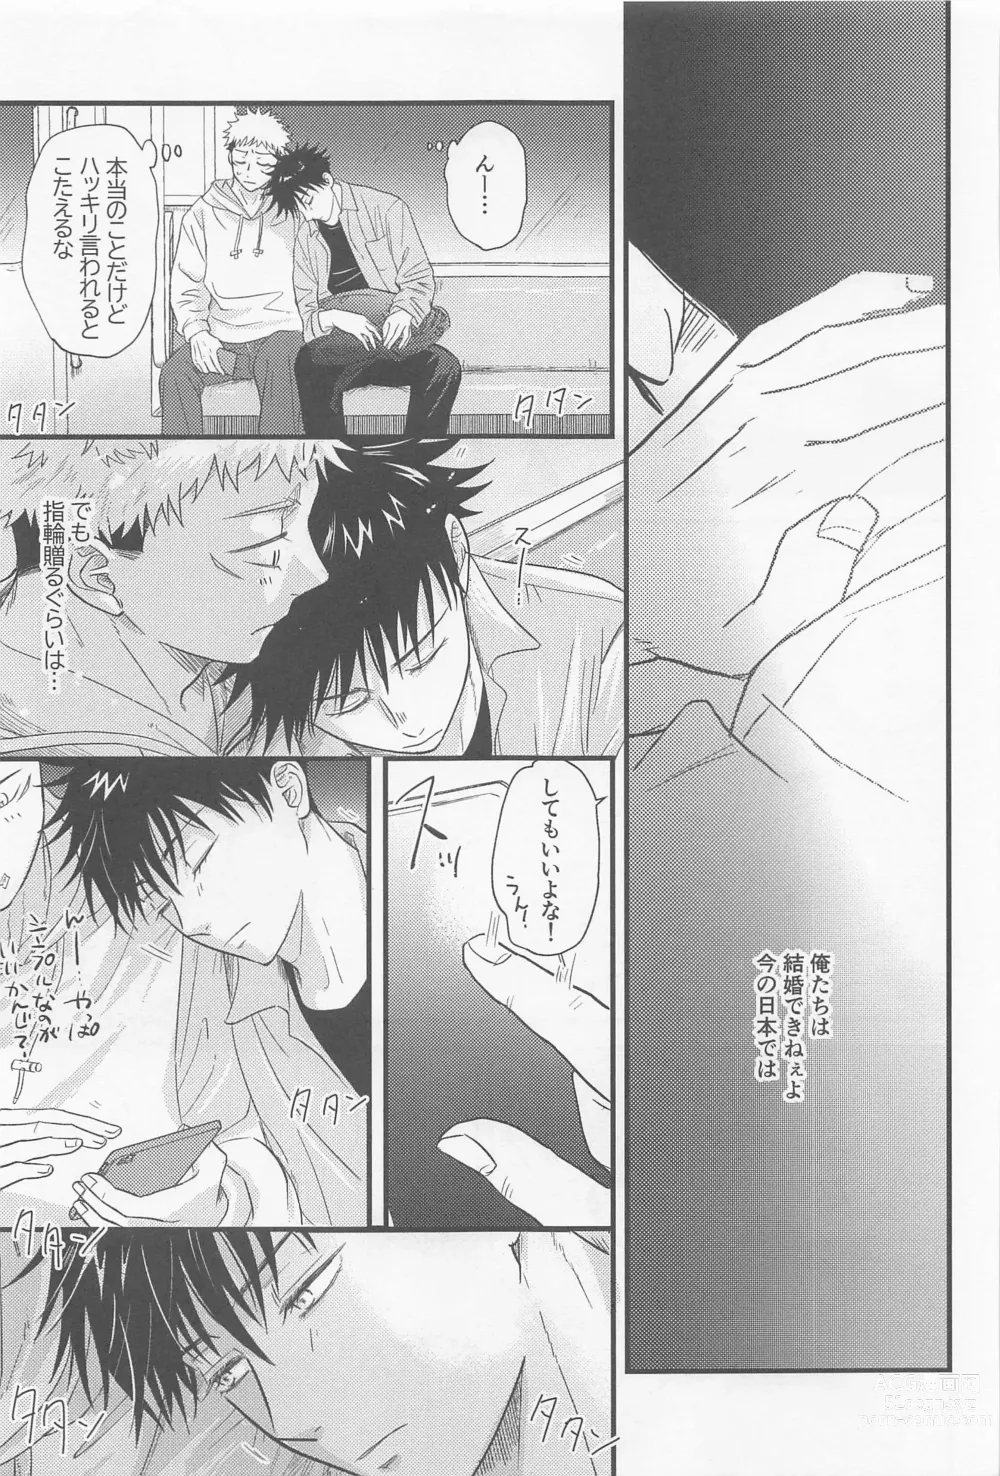 Page 22 of doujinshi Bokura ga Futari de Kurashitara - If we lived together.